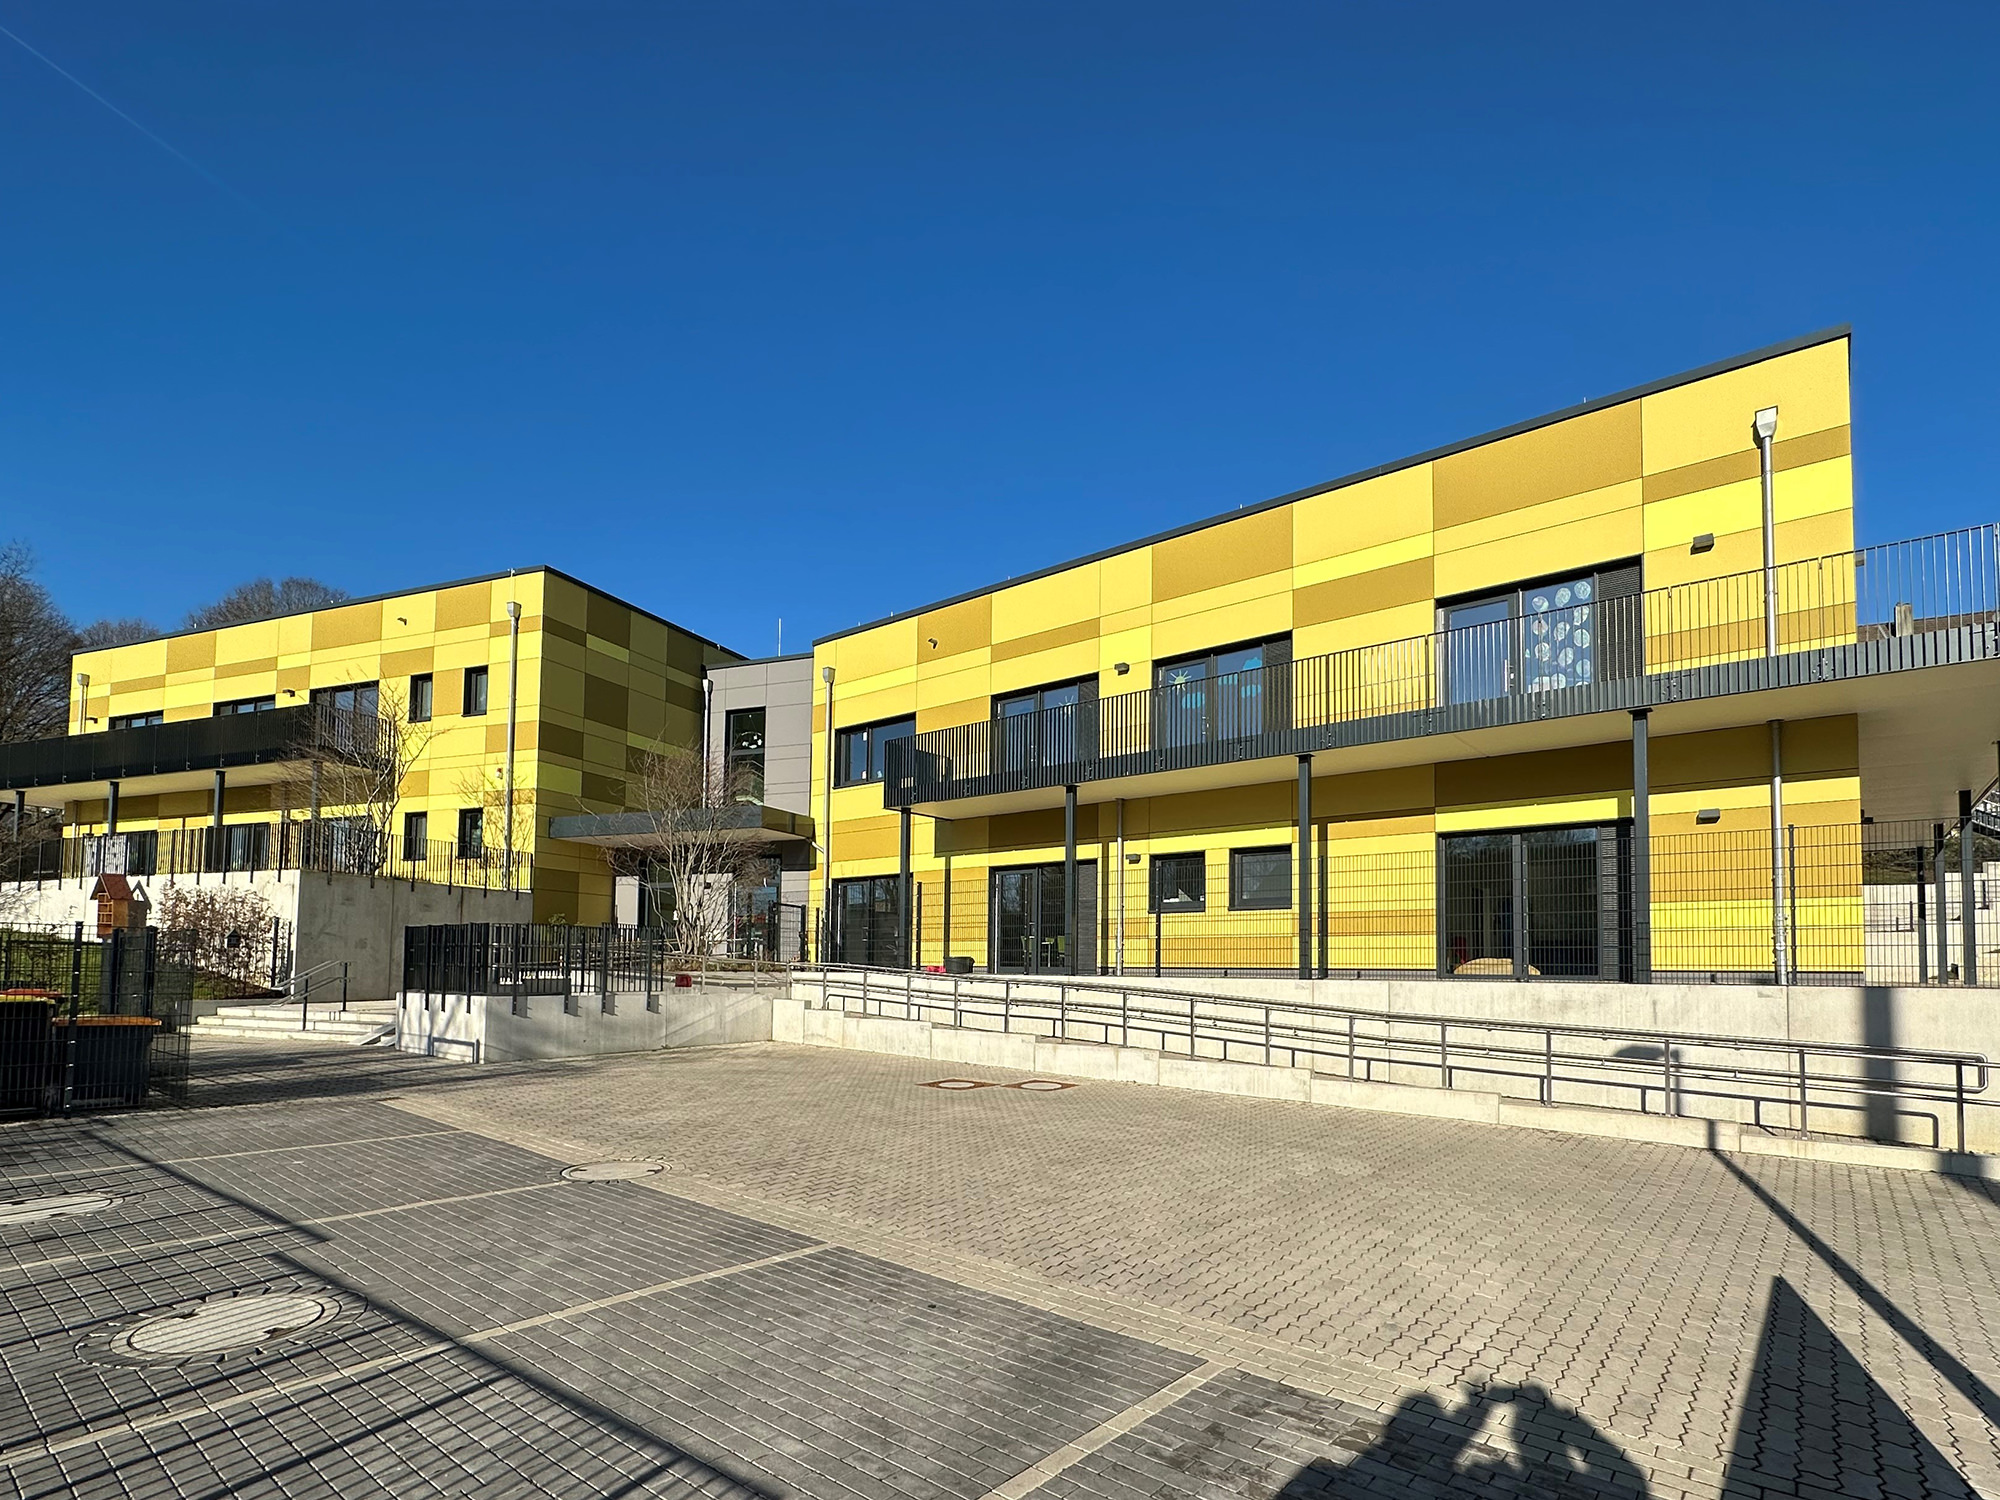 Kindertagesstätte, Neubau, Wuppertal - ah-architektur.de | Alisic-Haverkamp – Wir verfolgen das Ziel, funktionelle, kostenbewusste und ambitioniert gestaltete Architektur zu schaffen, die einen ah-Effekt auslöst.